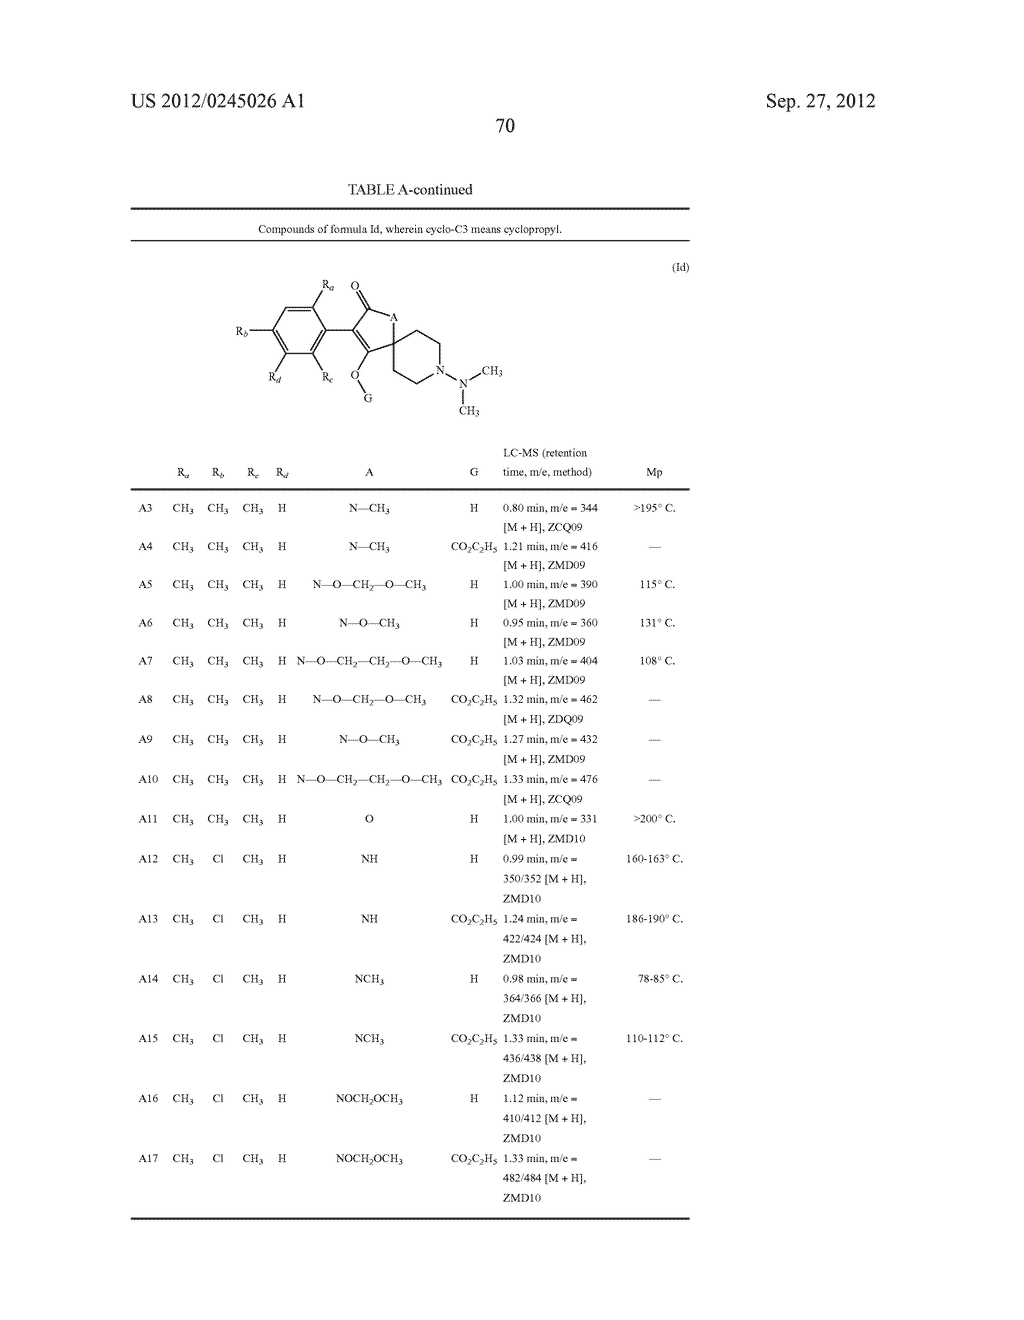 SPIRO FUSED 1-AMINO - PIPERDINE PYRROLIDINE DIONE DERIVATIVES WITH     PESTICIDAL ACTIVITY - diagram, schematic, and image 71